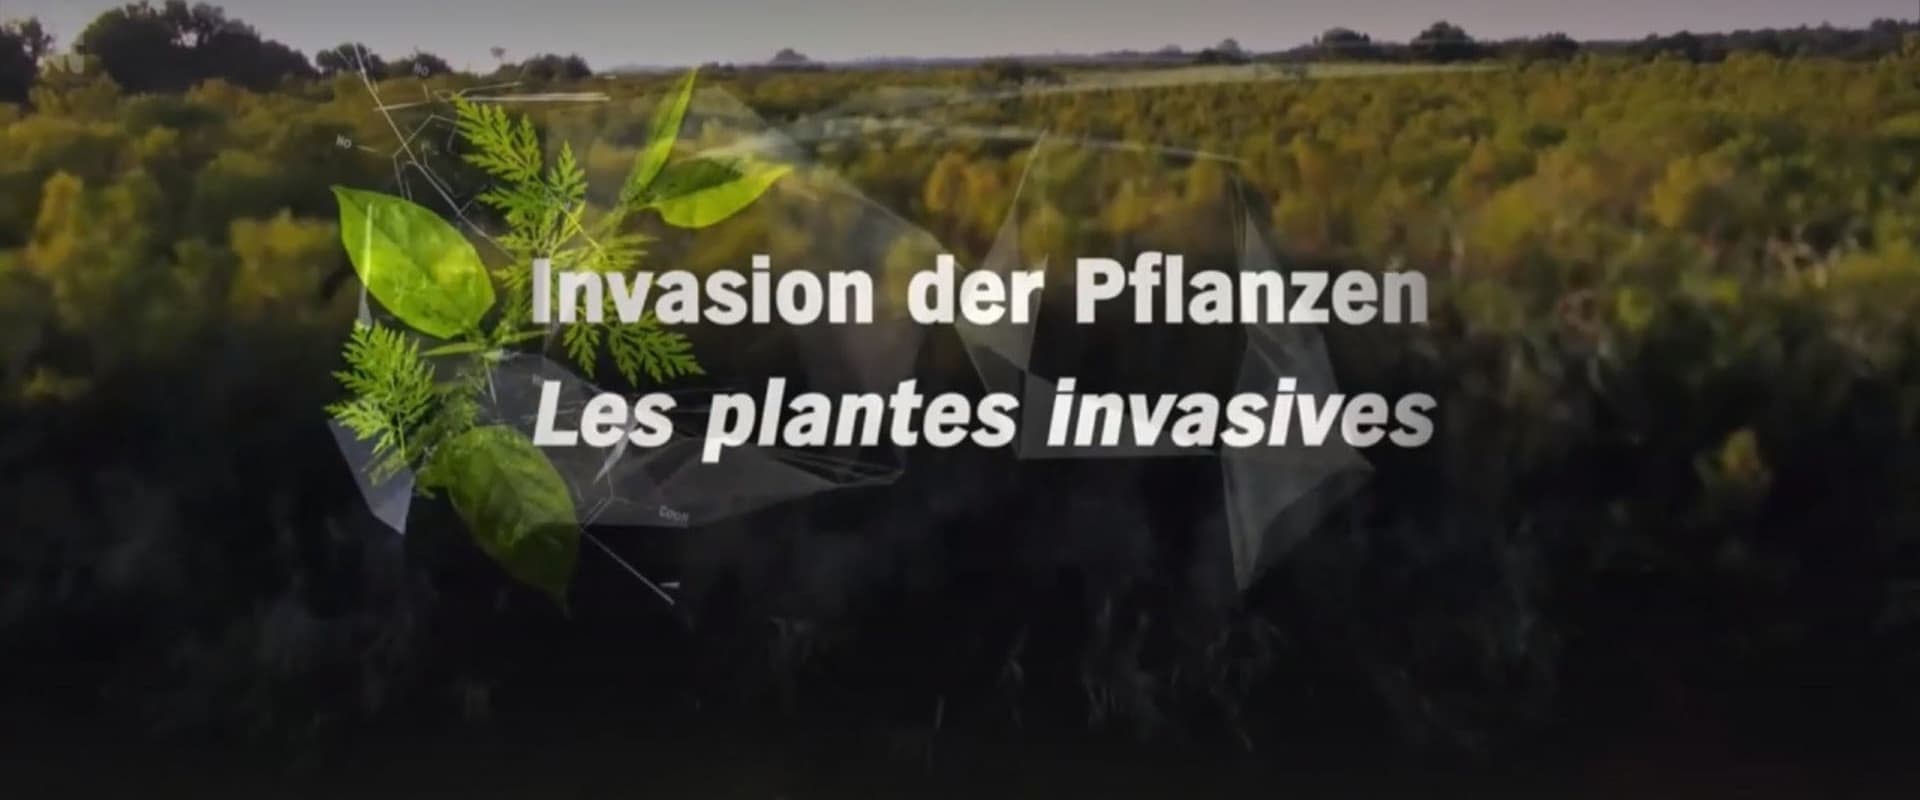 Invasion der Pflanzen - Gefahr für Umwelt und Mensch ?